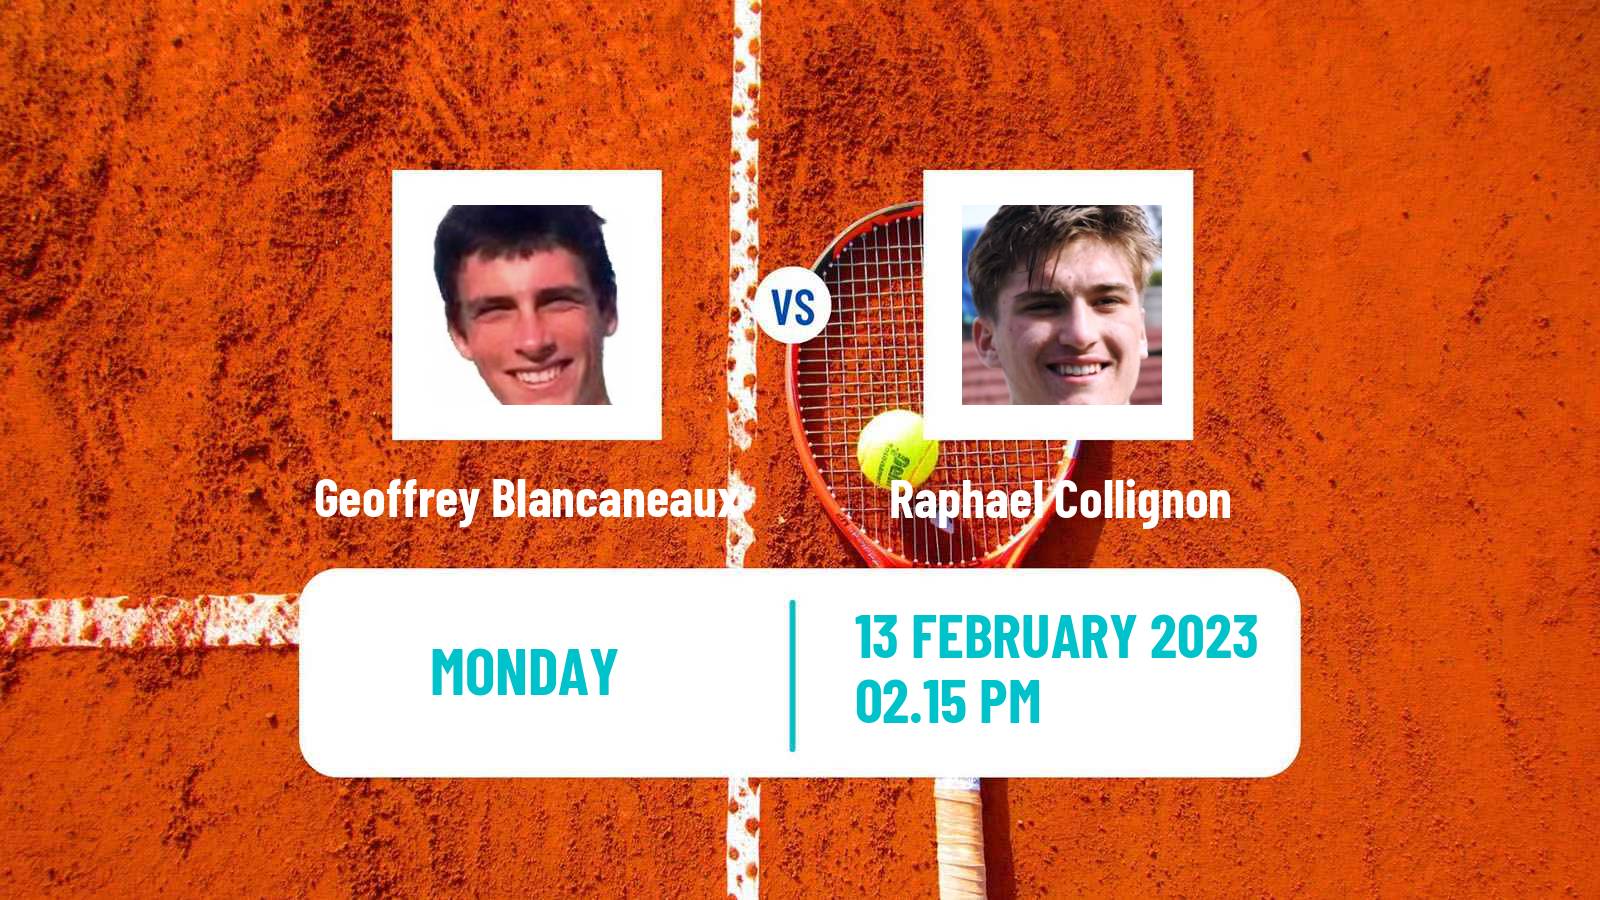 Tennis ATP Challenger Geoffrey Blancaneaux - Raphael Collignon